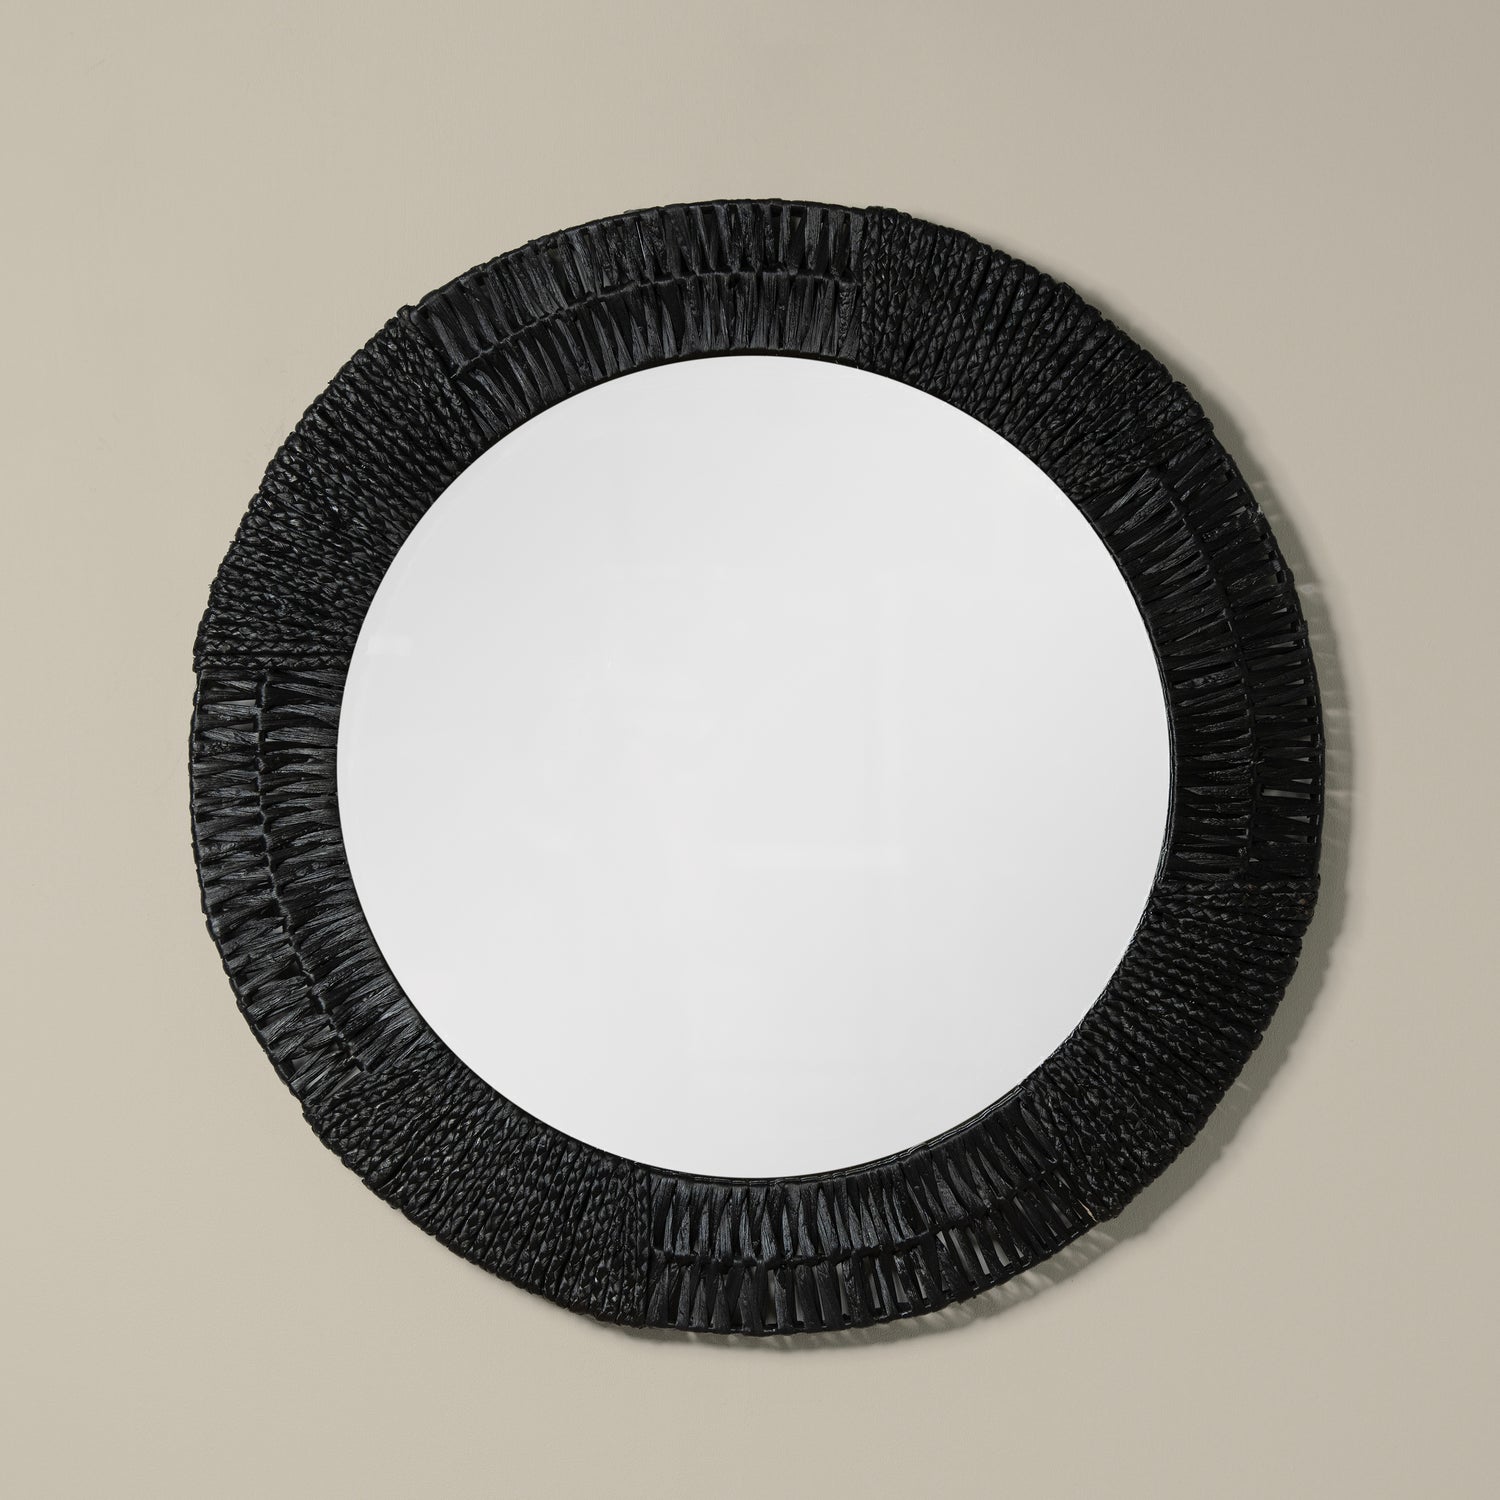 folha round mirror in black front